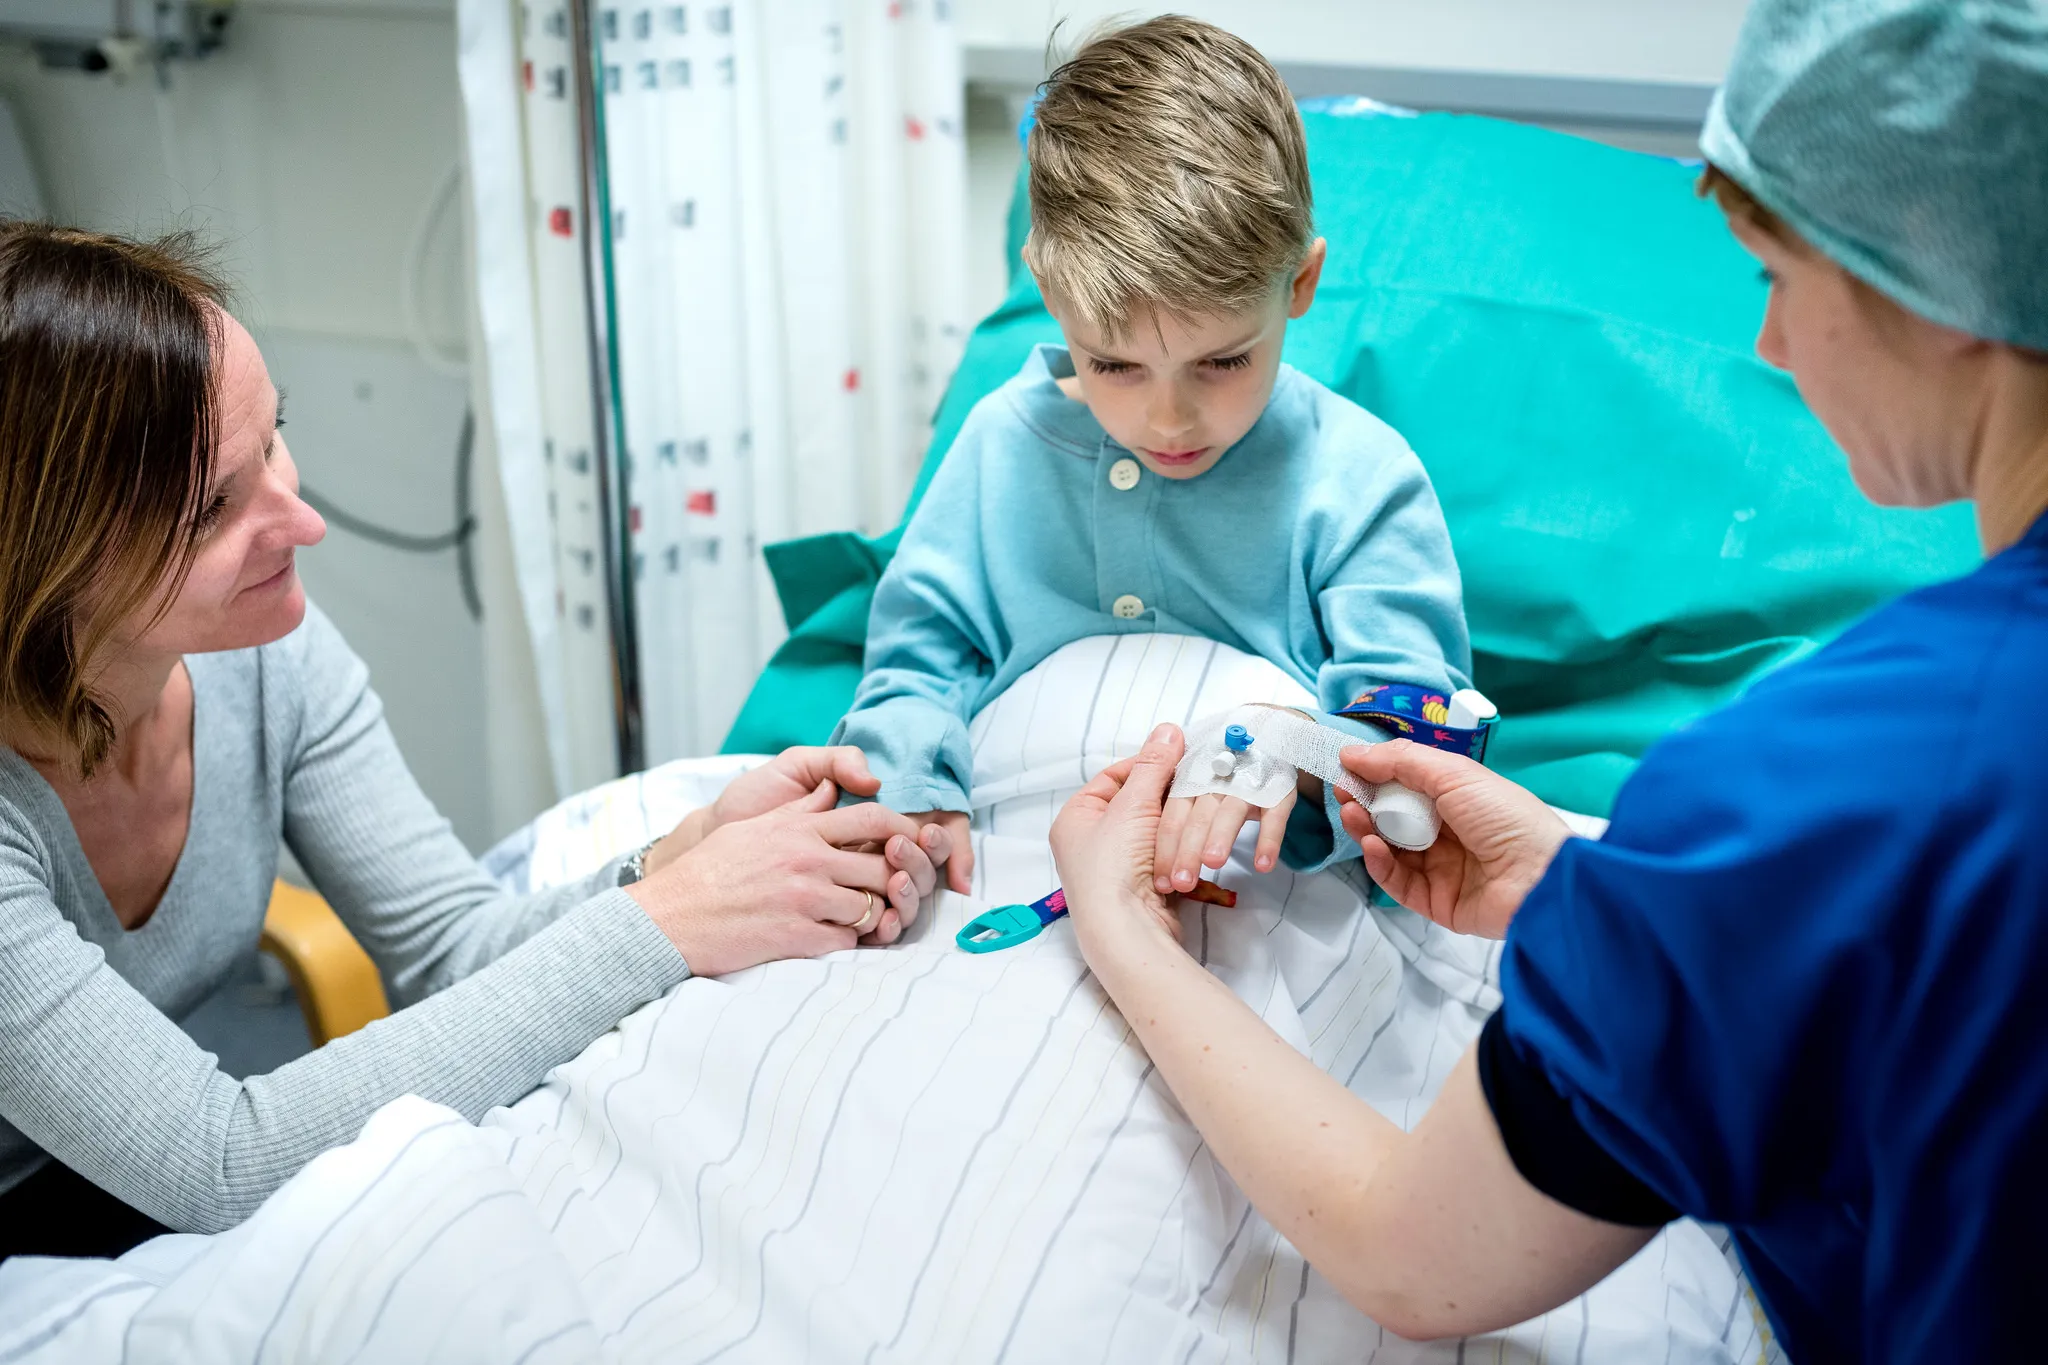 Mor og sønn ser når en sykepleier i blå klær setter inn en veneflon i guttens hånd. Foto.